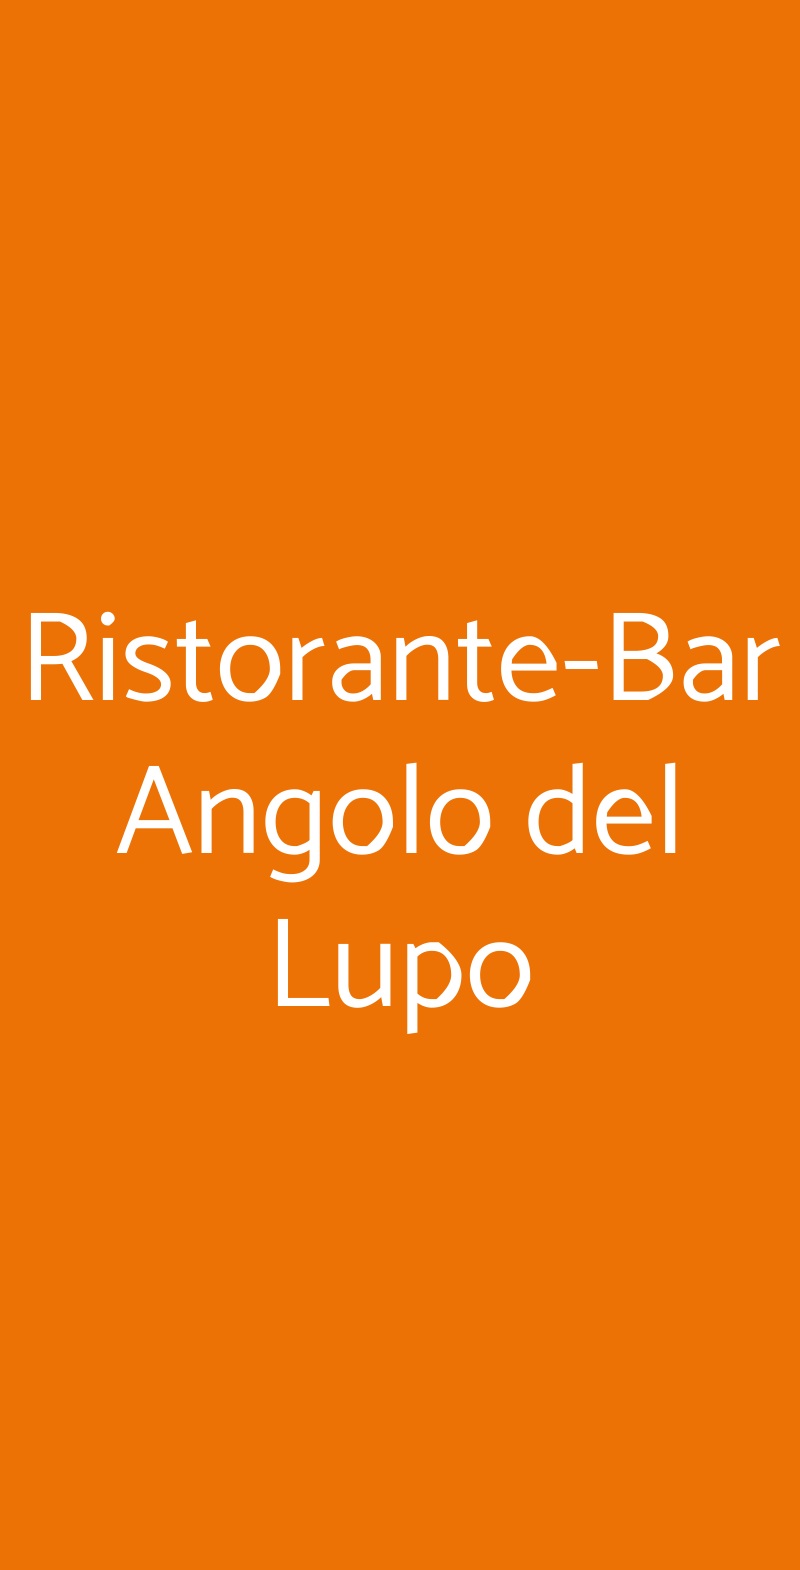 Ristorante-Bar Angolo del Lupo Grottammare menù 1 pagina